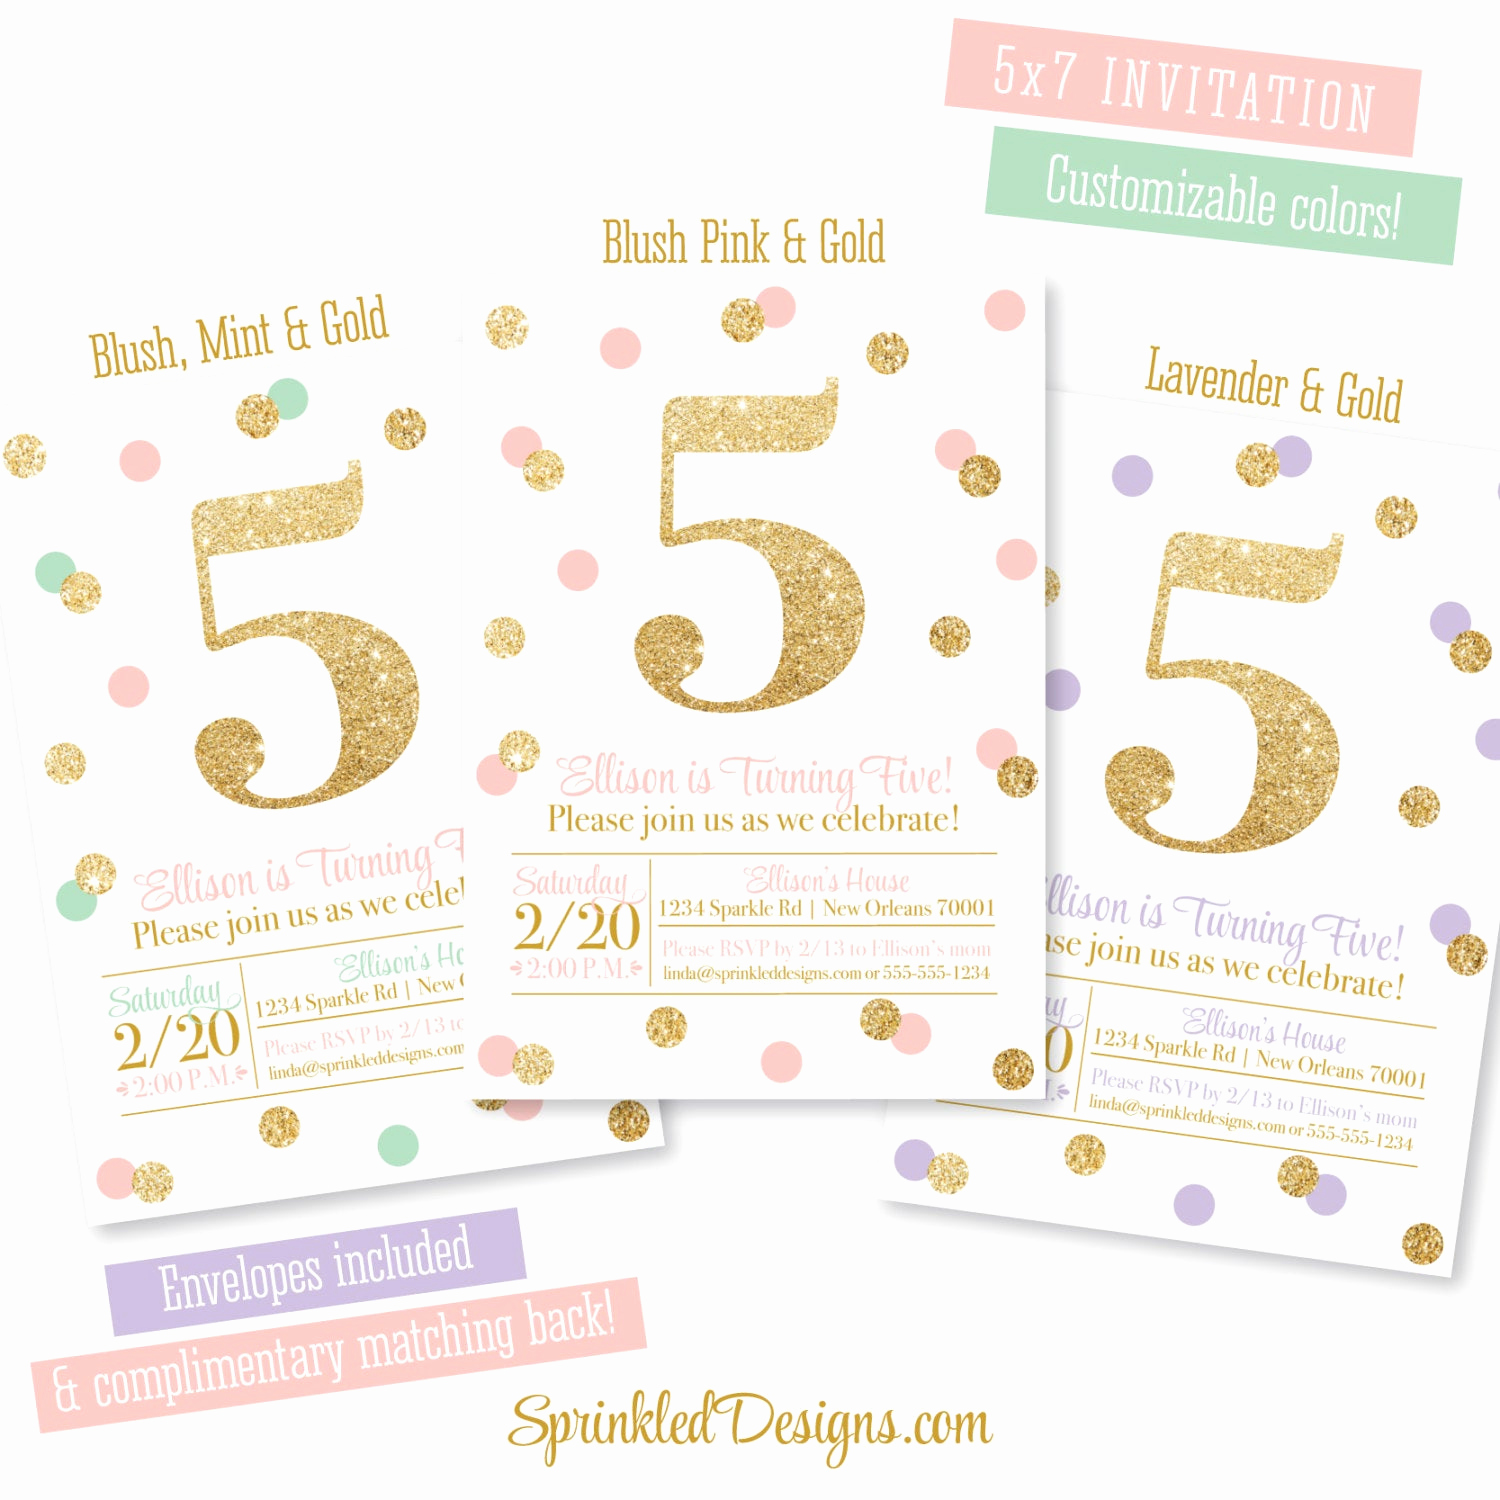 5th Birthday Party Invitation Elegant 5th Birthday Invitation Blush Pink Mint Gold Glitter